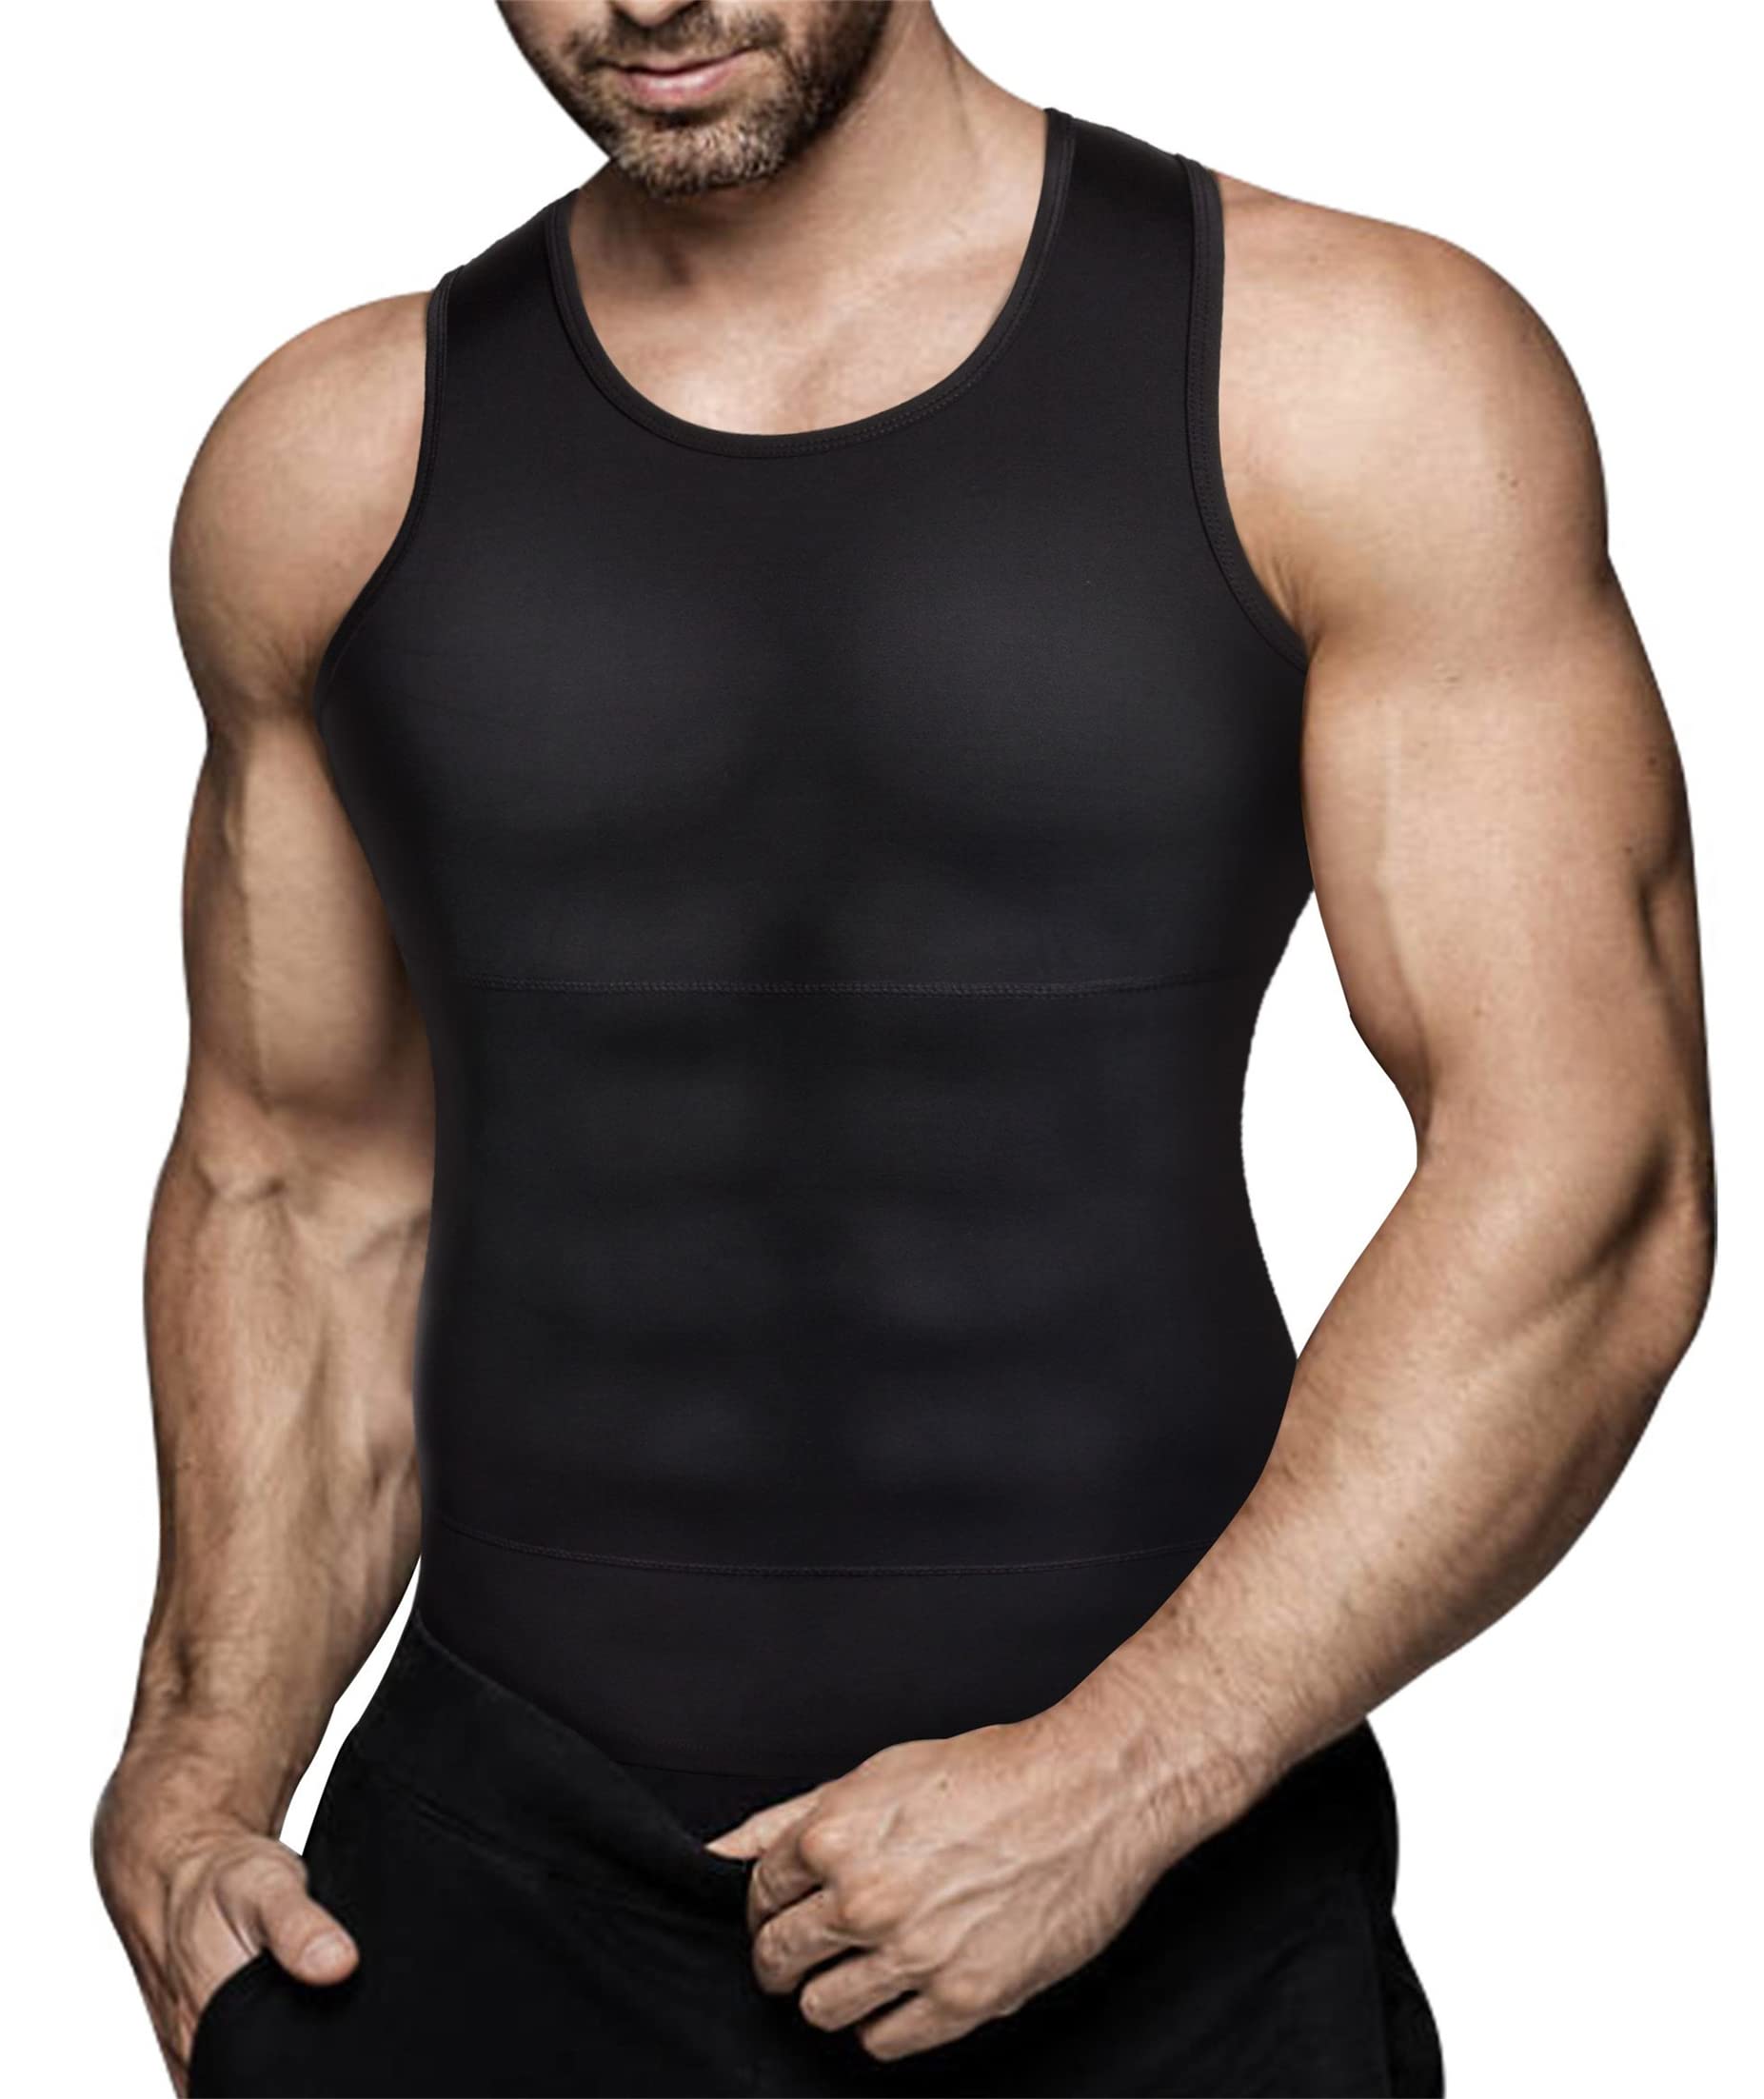 Black Cotton Tummy Control Secret Shaping Vest